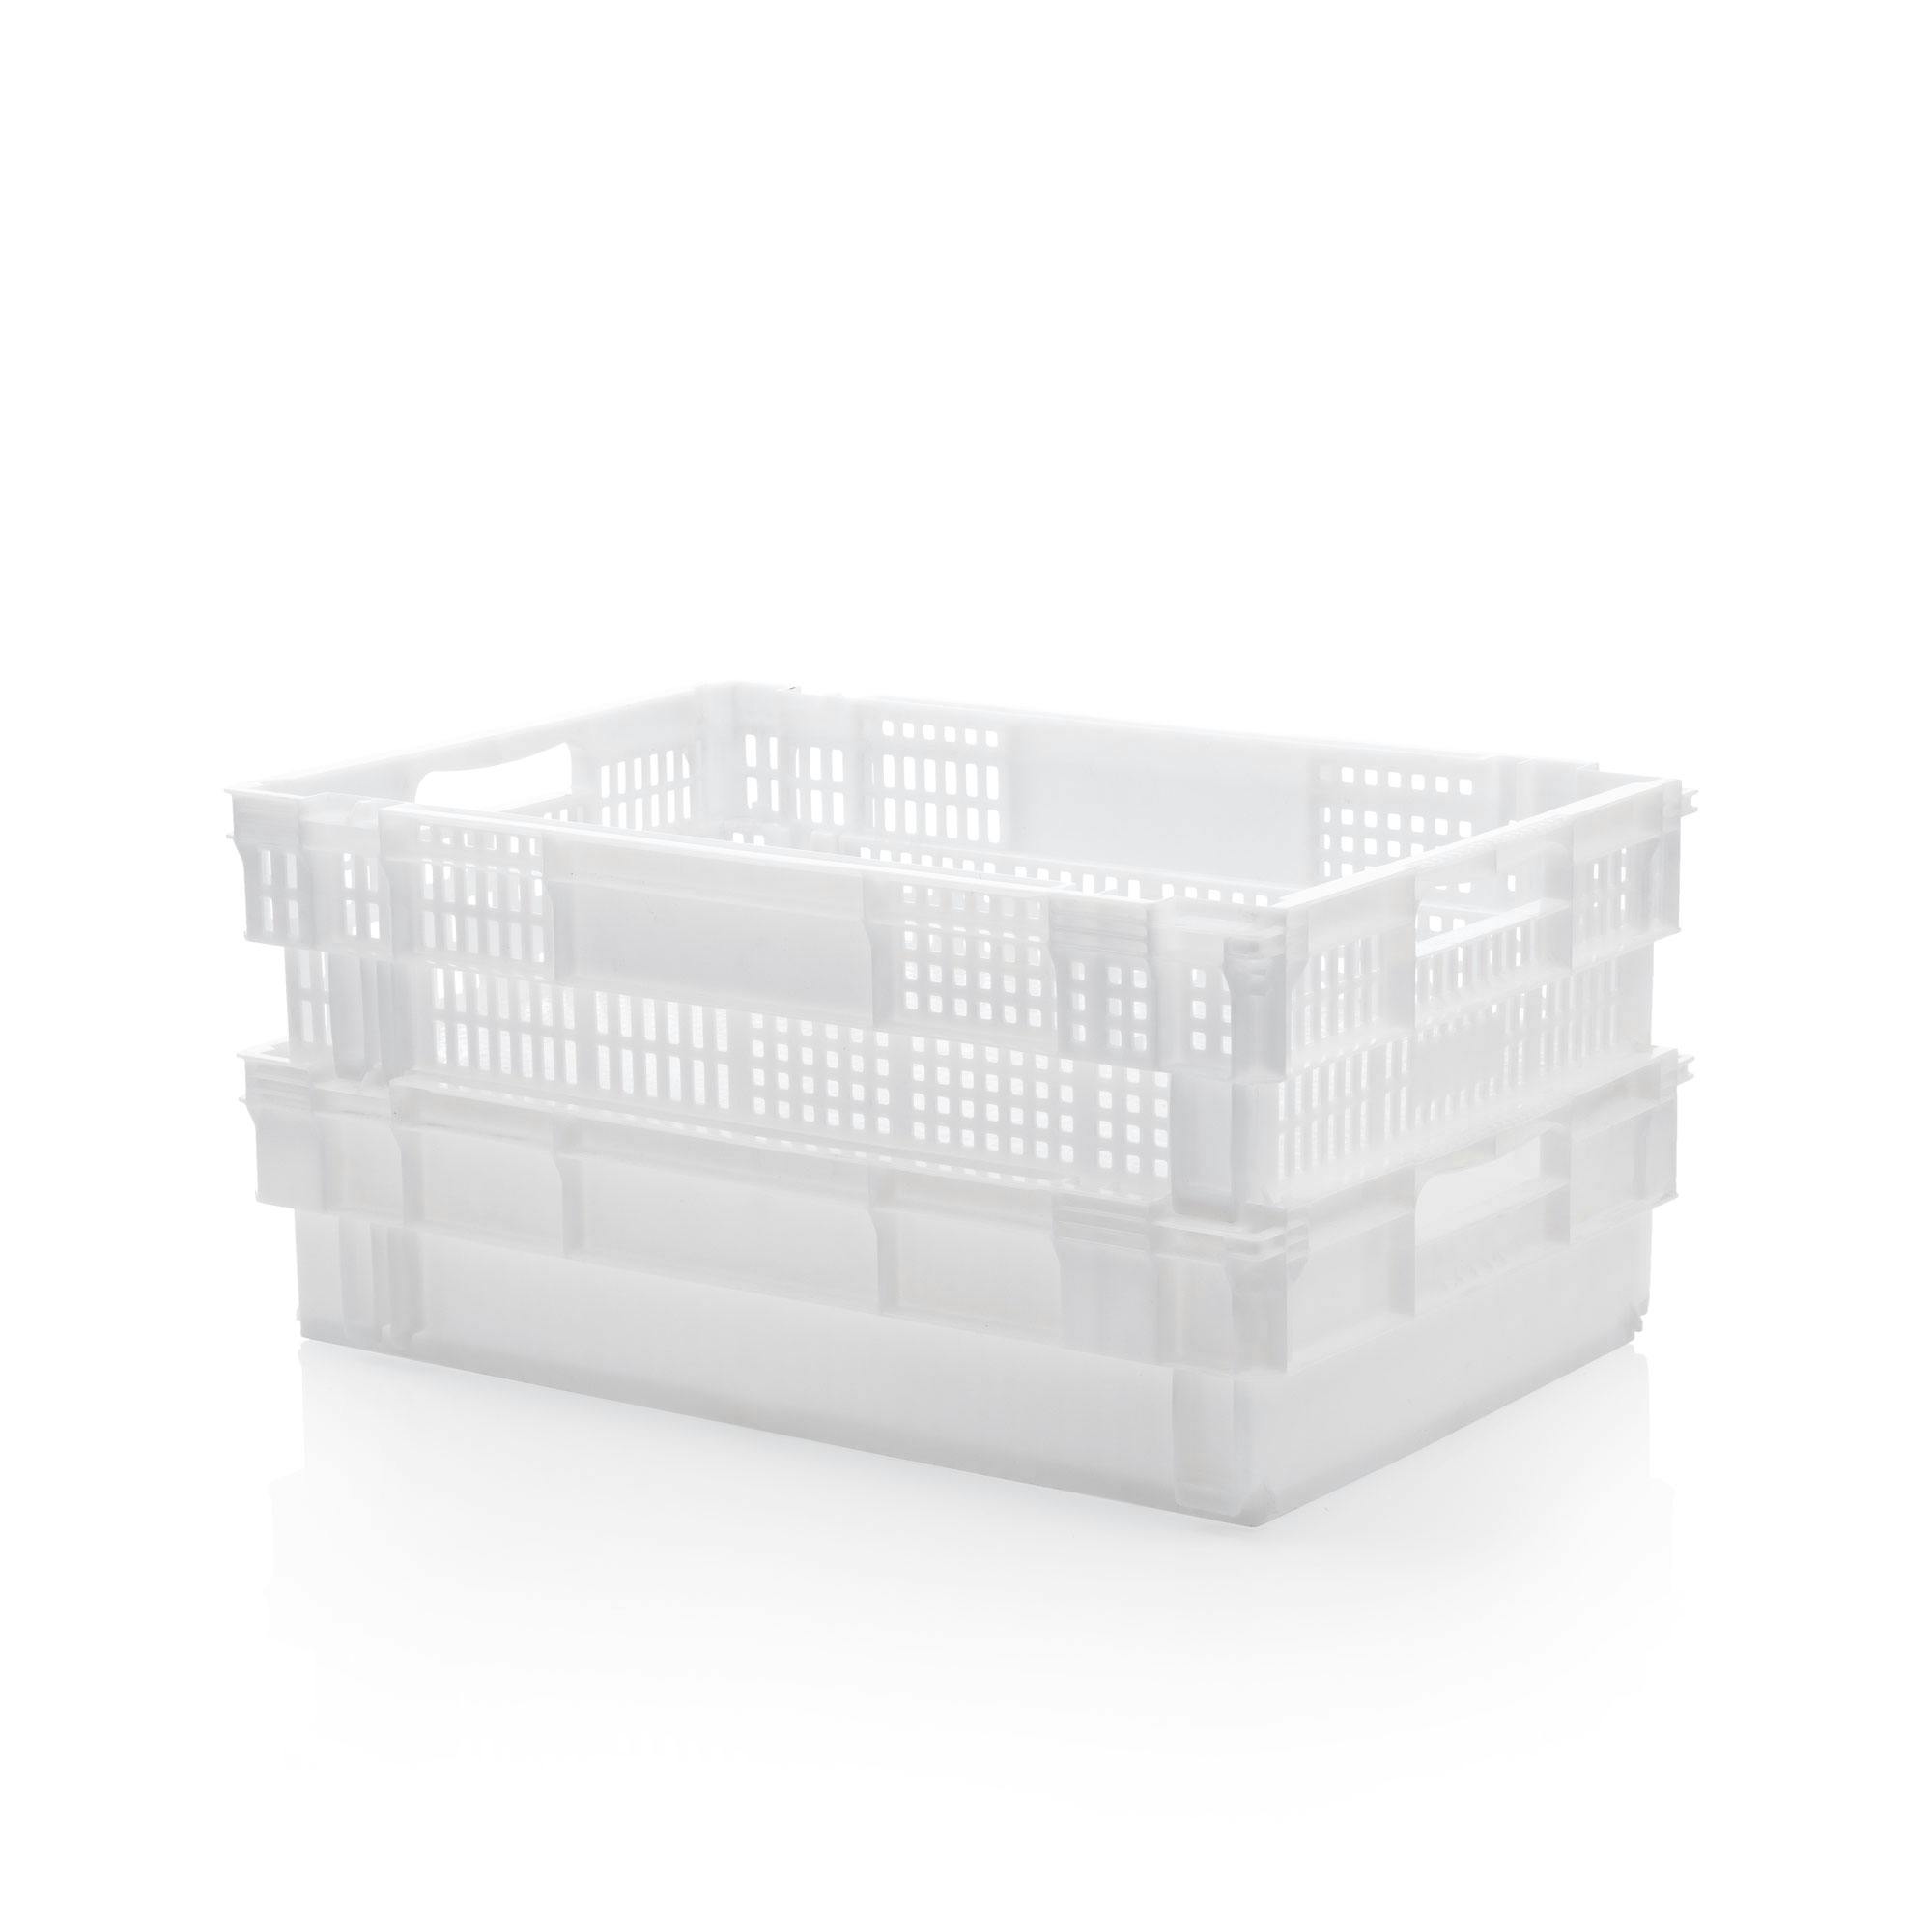 Caja Almacenaje de Plástico Clak Box Natural Denox - Ferretería On Line